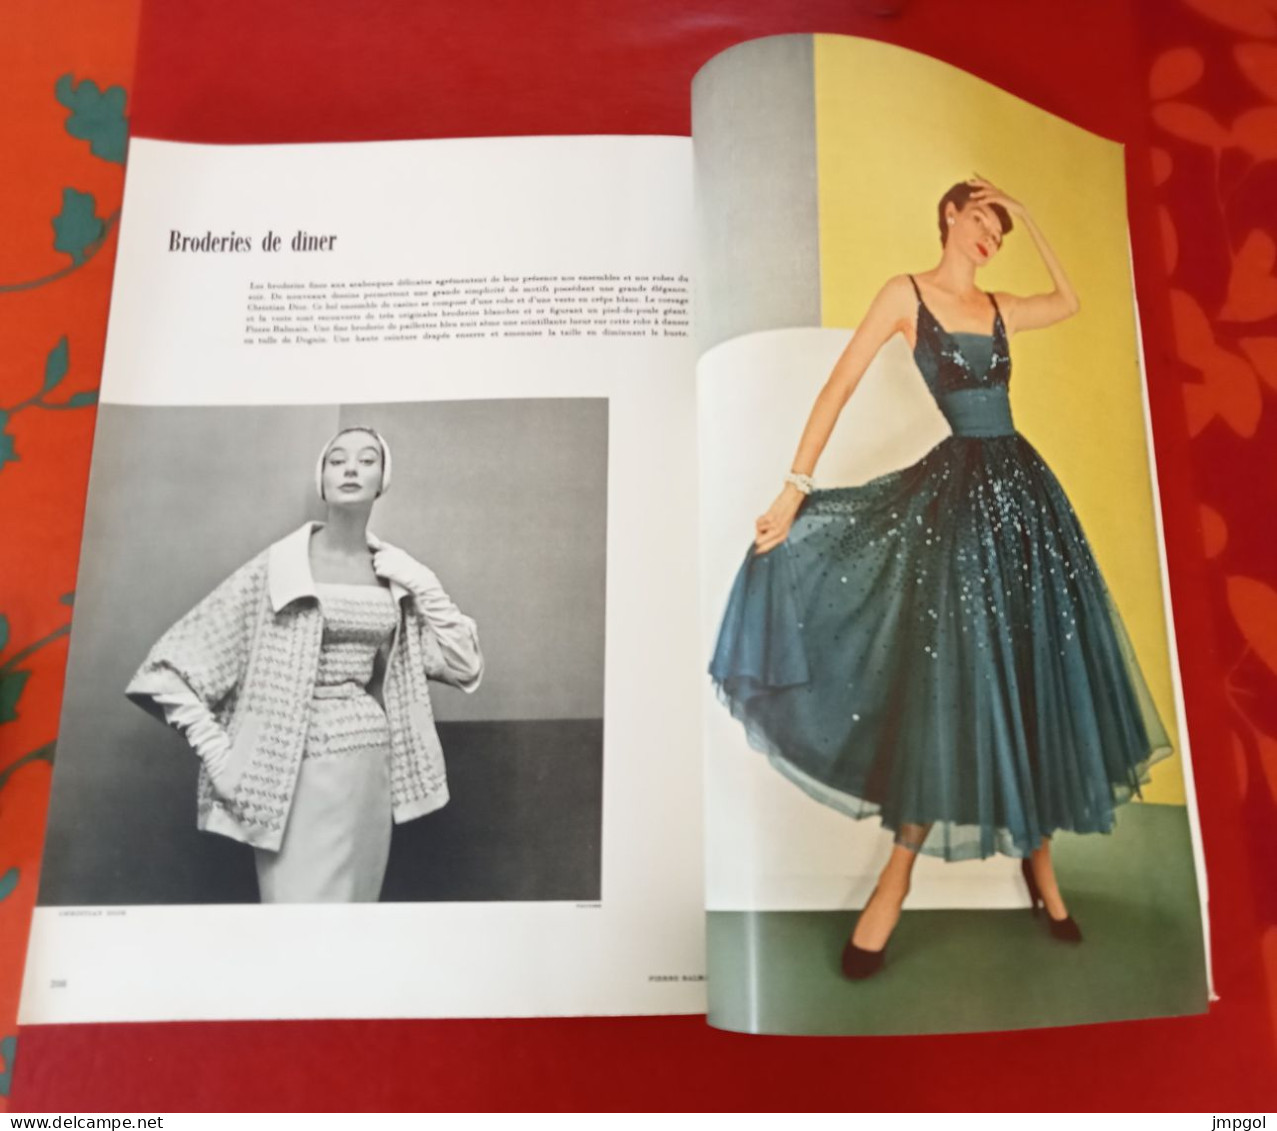 Officiel de la Mode et de la Couture Paris Avril 1953 Collections Printemps Dior Balmain Cardin Ricci Waldorf Astoria